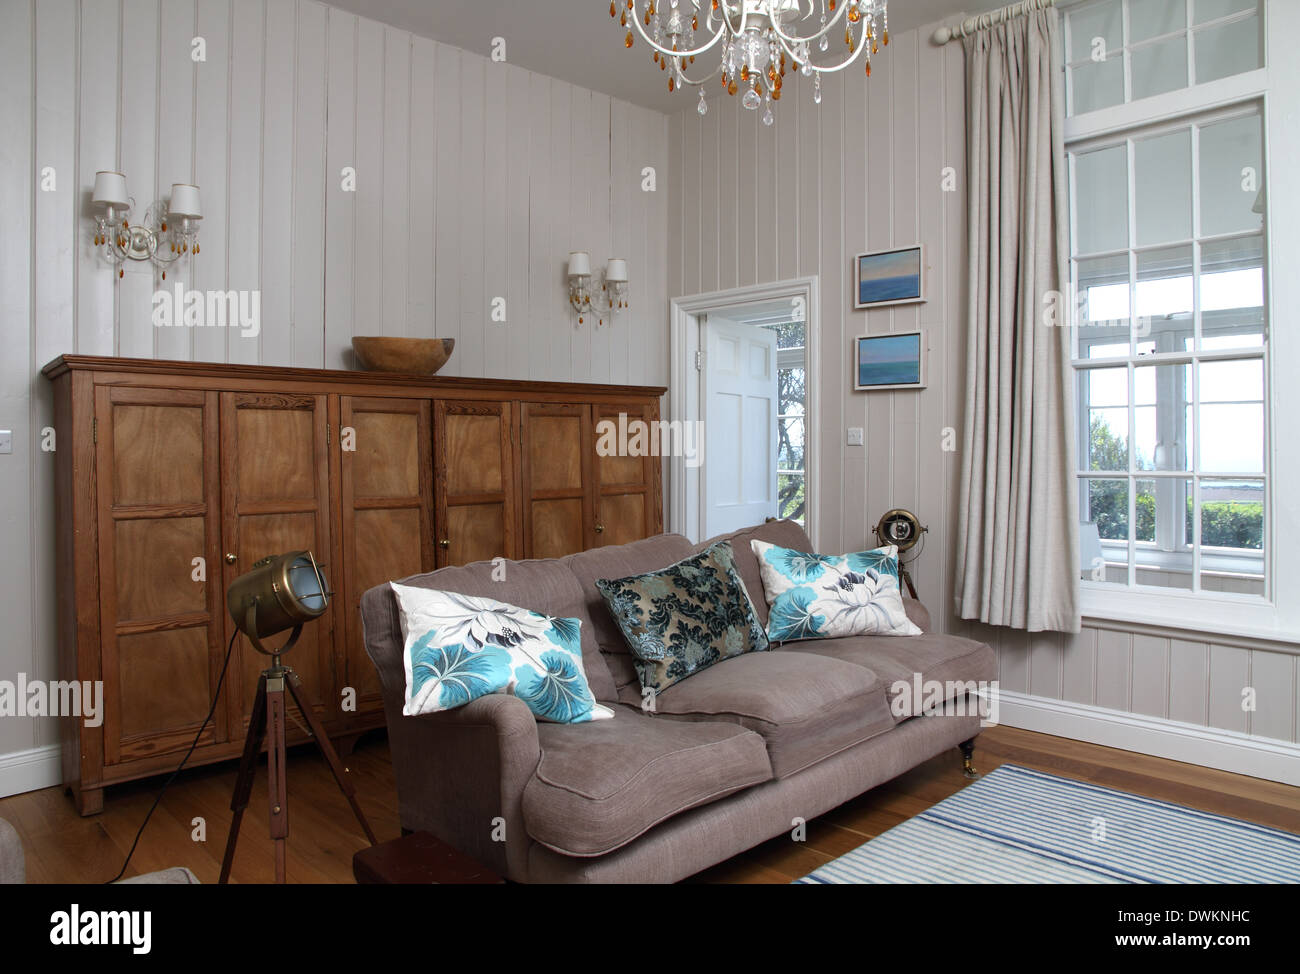 Wohnzimmer mit großen Anrichte aus Holz, Beige Sofa, Holzboden mit Teppich. Große Schiebefenster Stockfoto